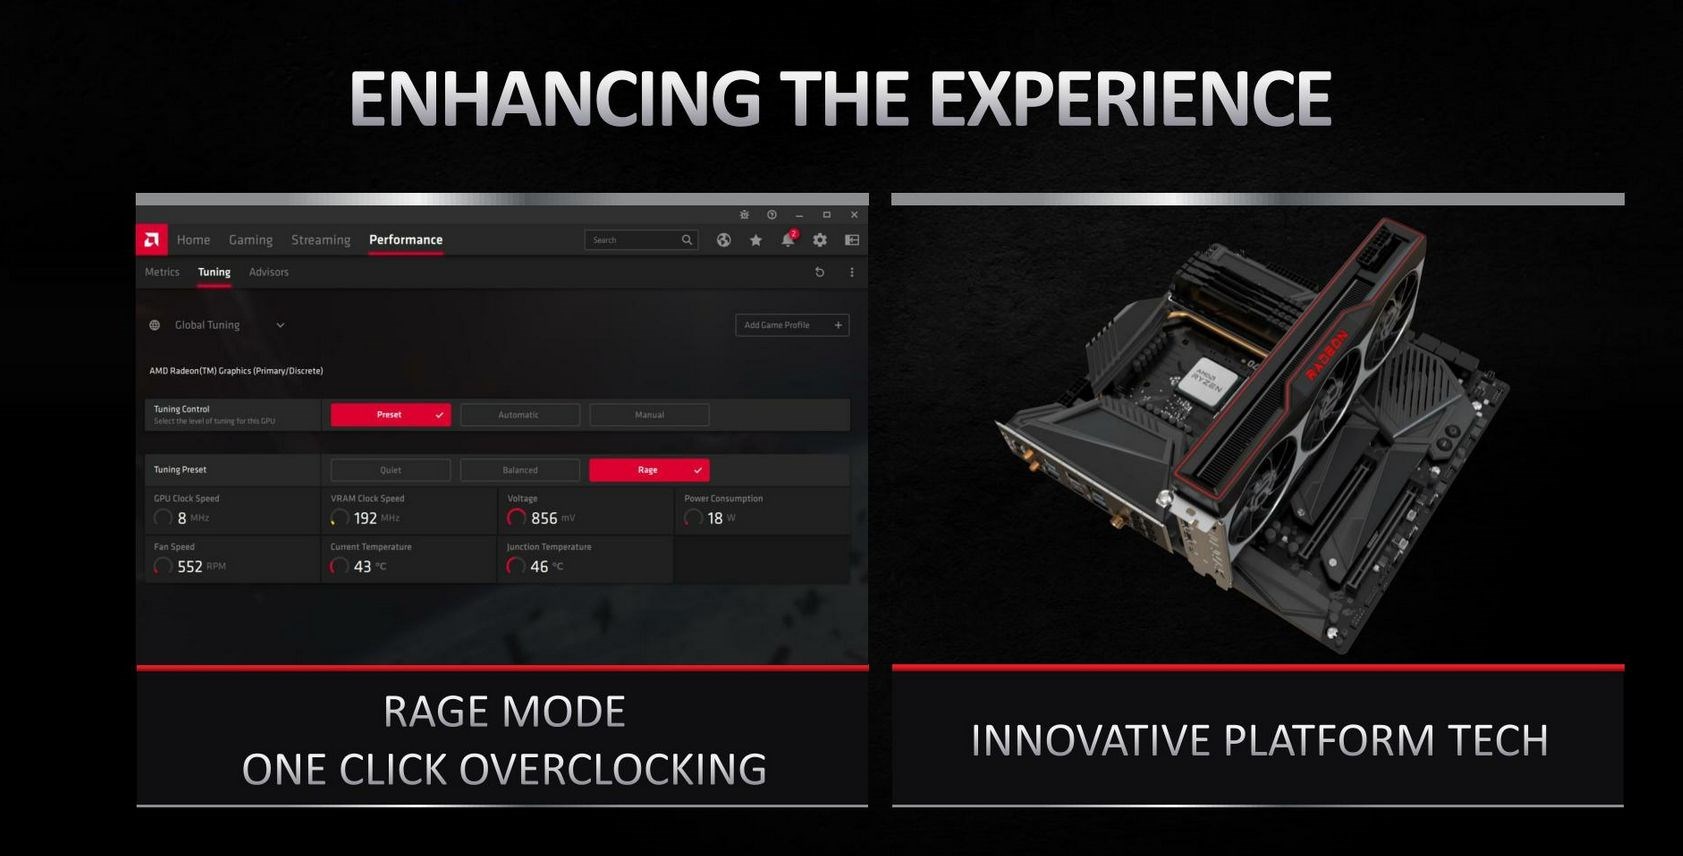 AMD’nin ekran kartlarını öne geçiren Smart Acces Memory ve Rage Mode nedir